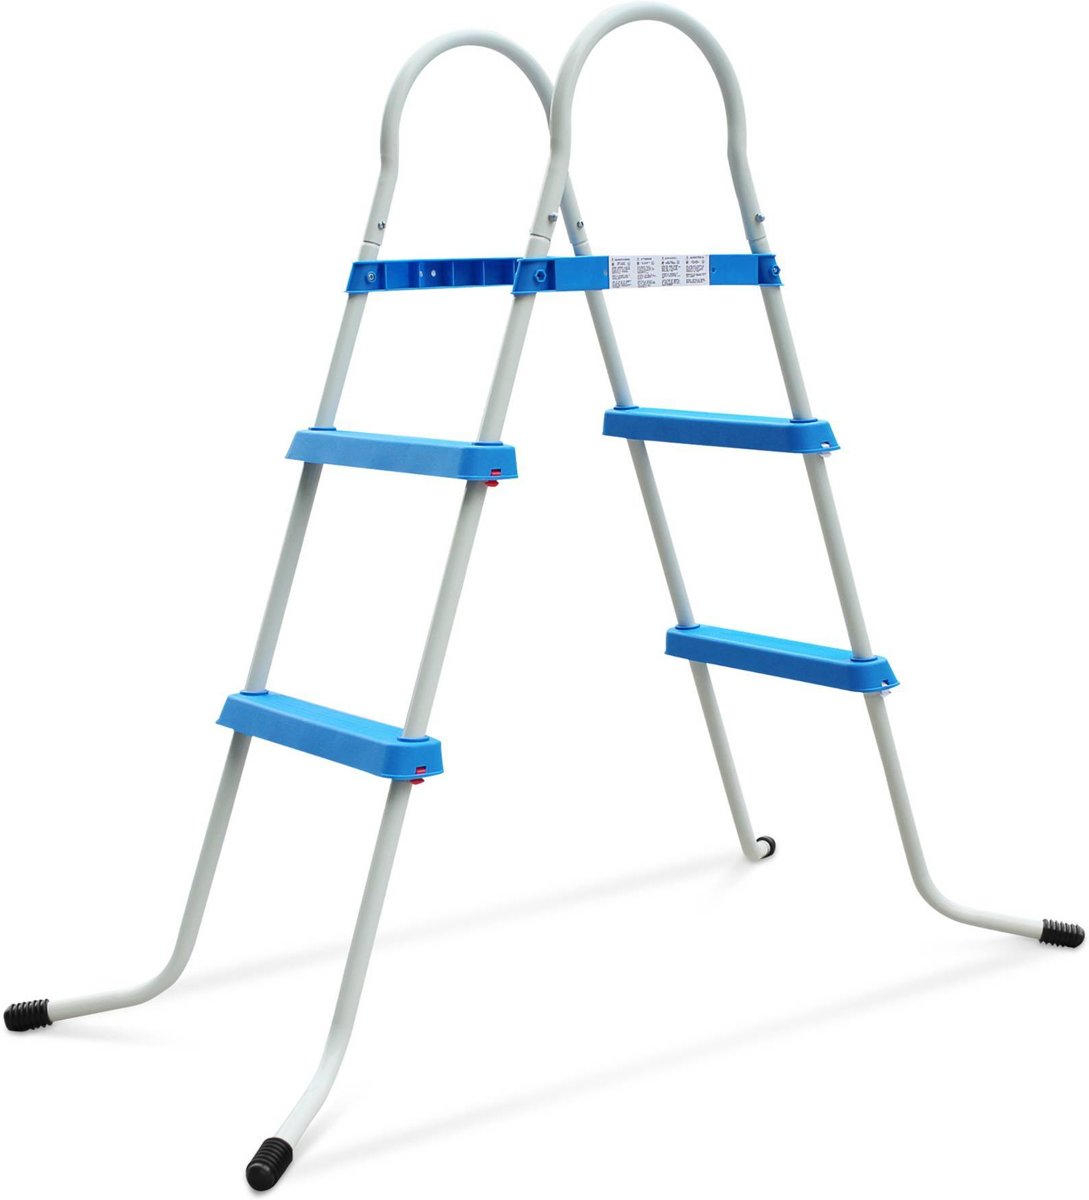 Ladder voor tuin zwembad met een hoogte van maximaal 84cm